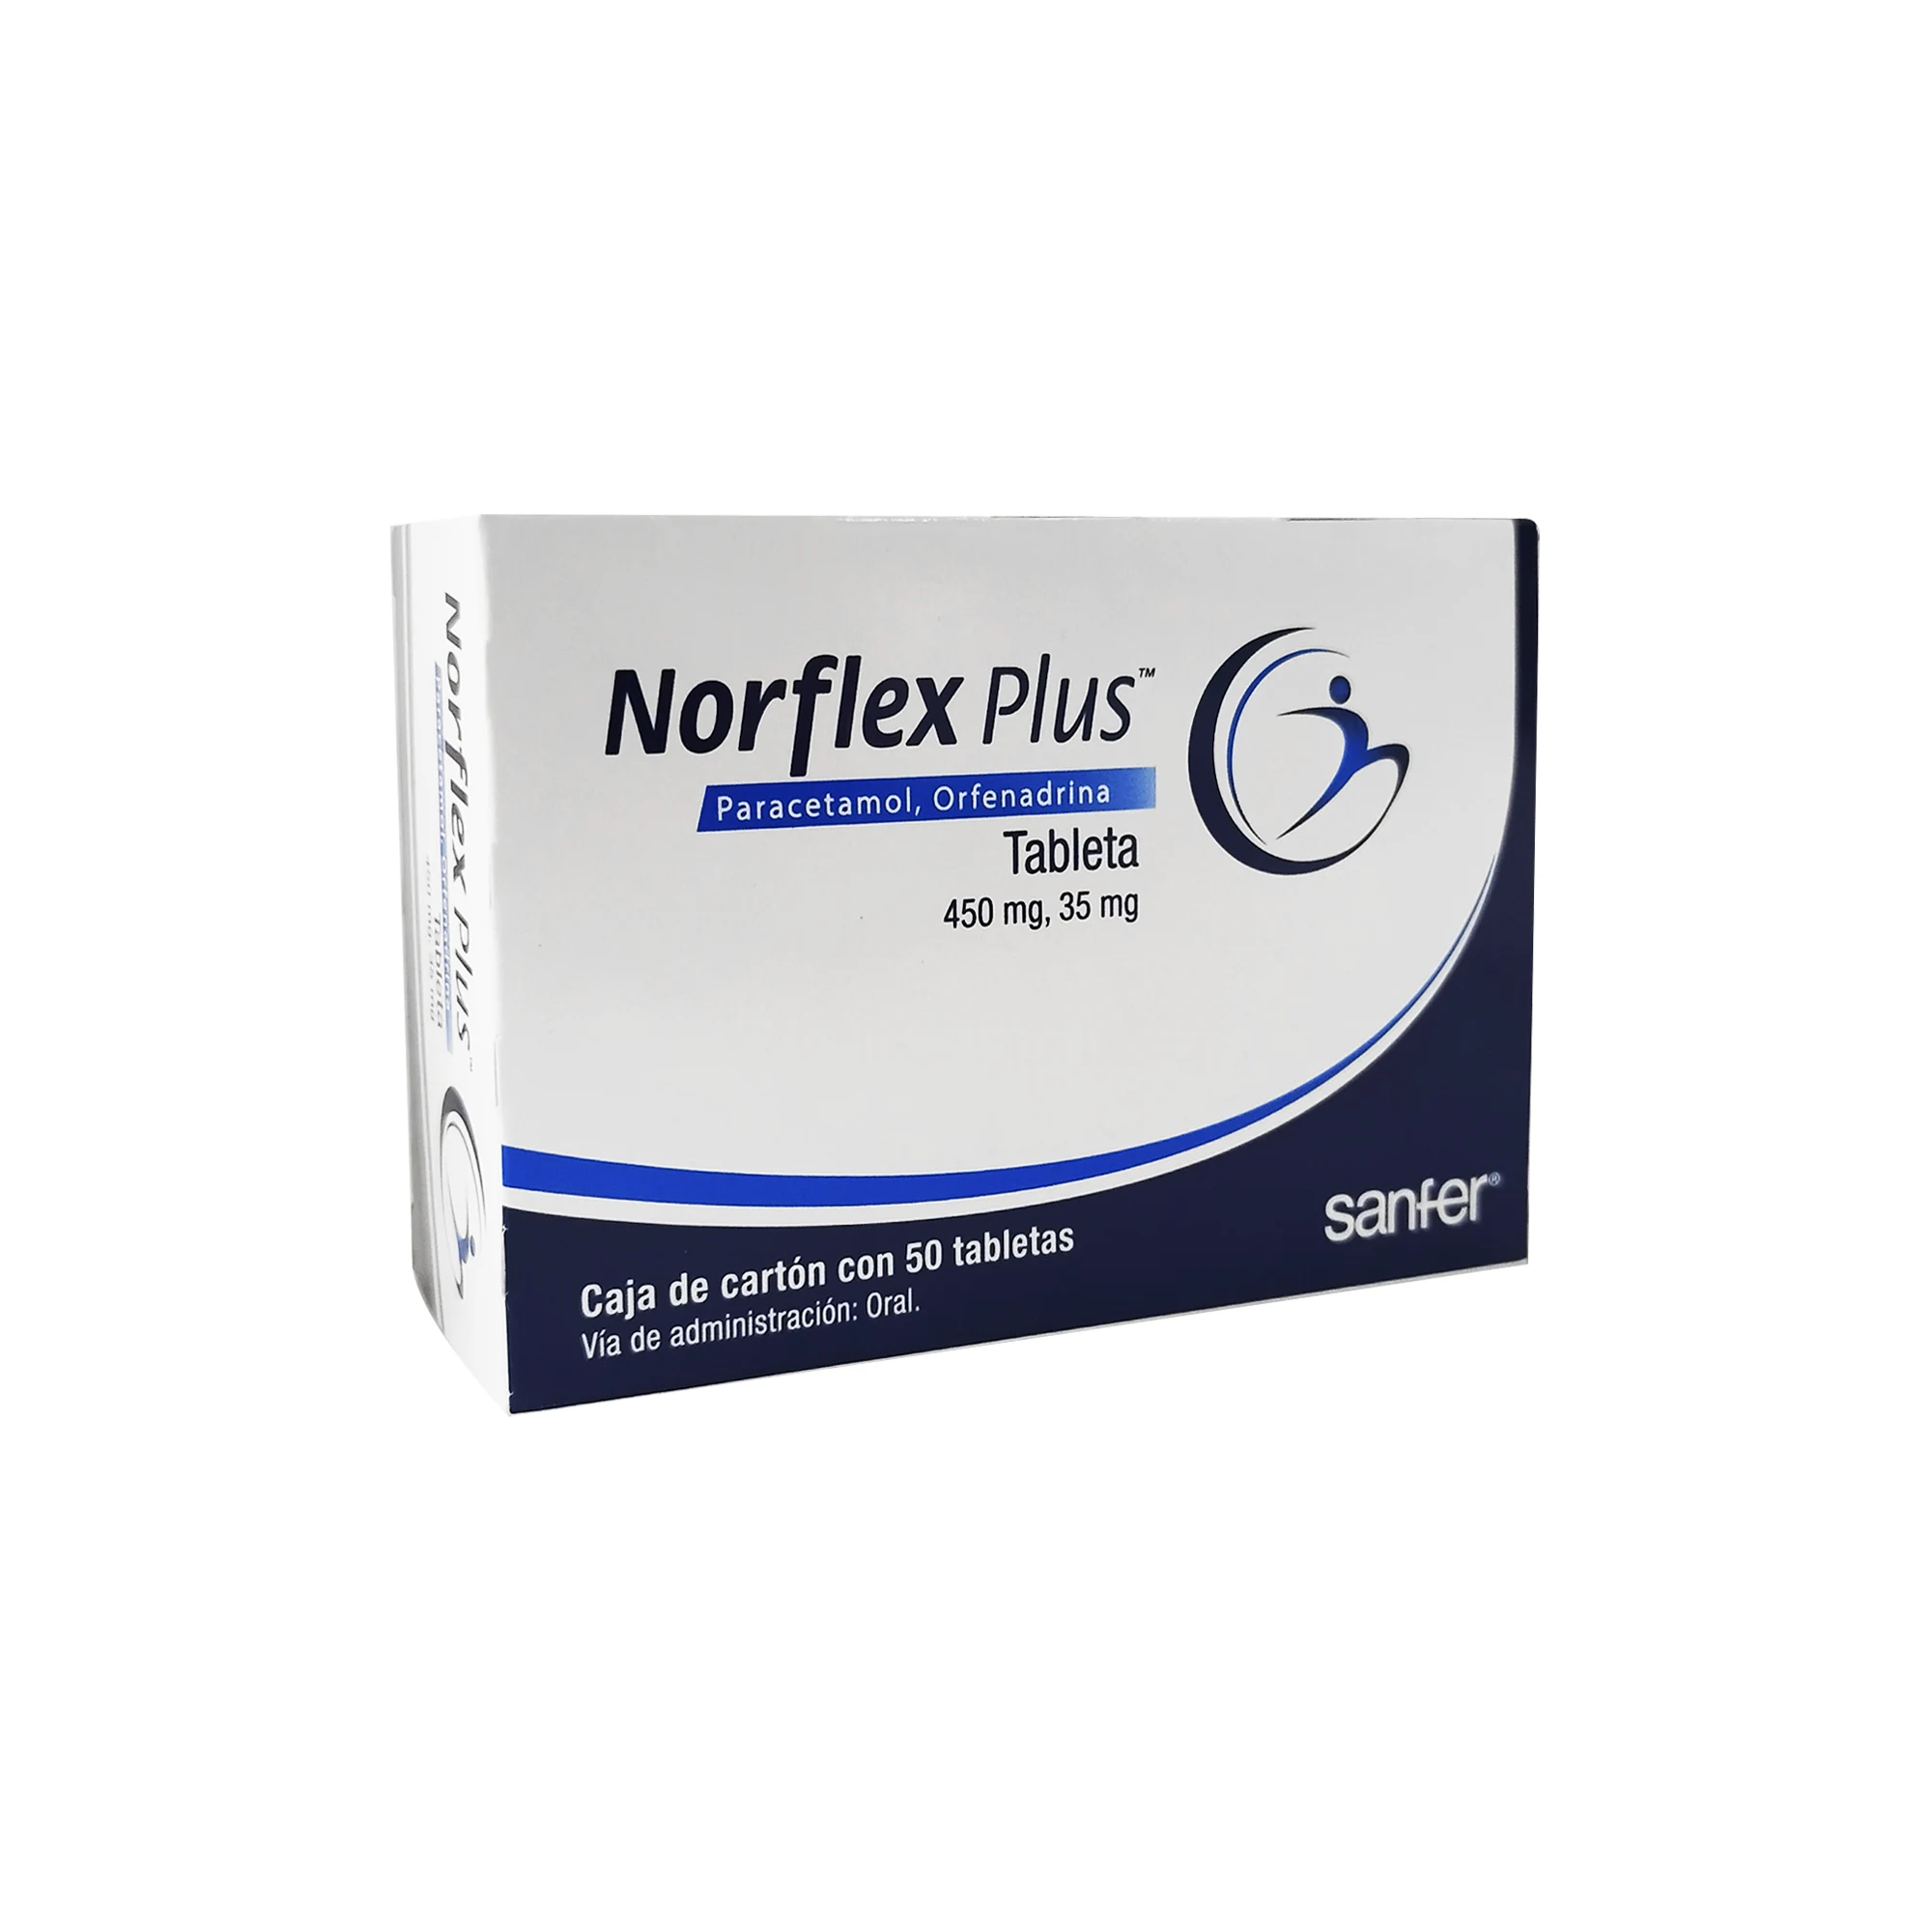 891671002277 1 norflex plus orfenadrina - paracetamol 35/450 mg tableta 50 tableta(s)